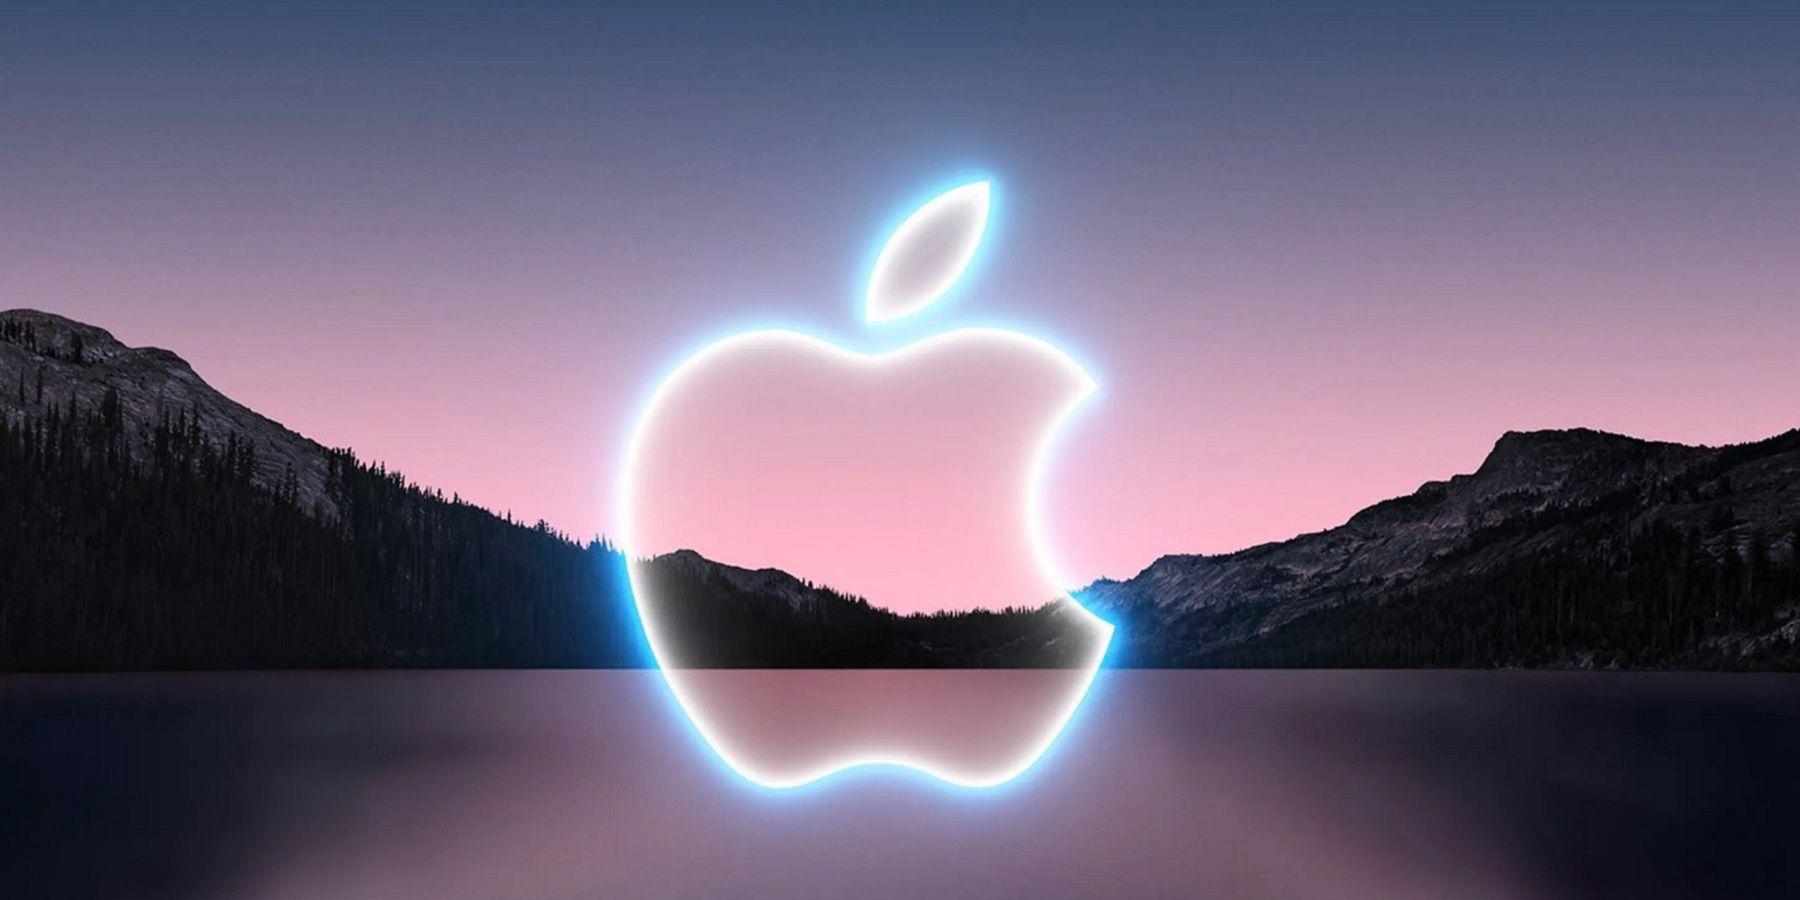 Apple supostamente lança fone de ouvido AR / VR no outono de 2023